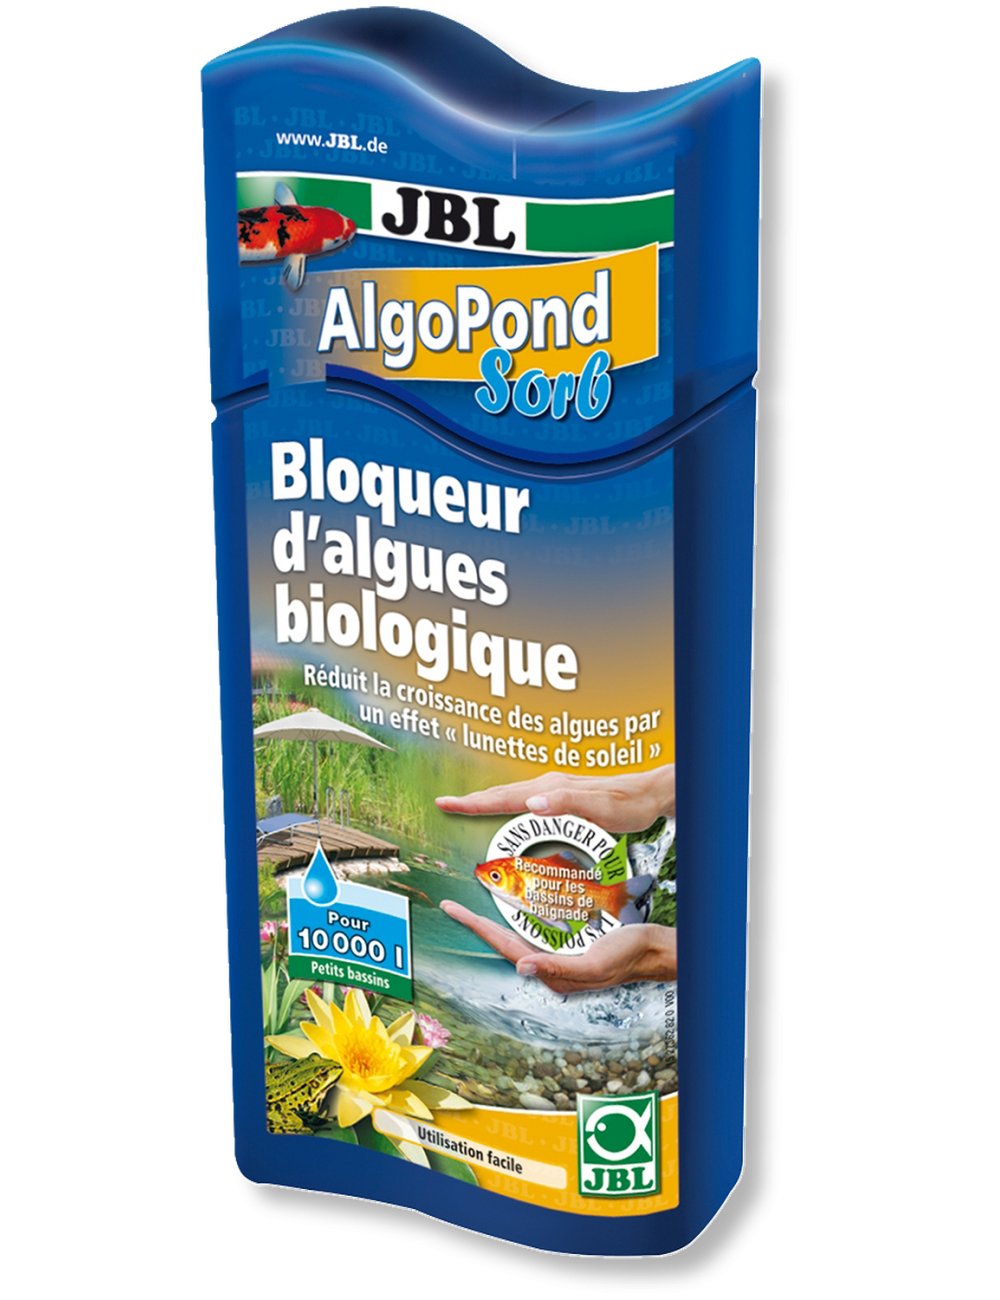 JBL - AlgoPond sorb - 500ml - Bloqueur d’algues biologique pour bassin de jardin